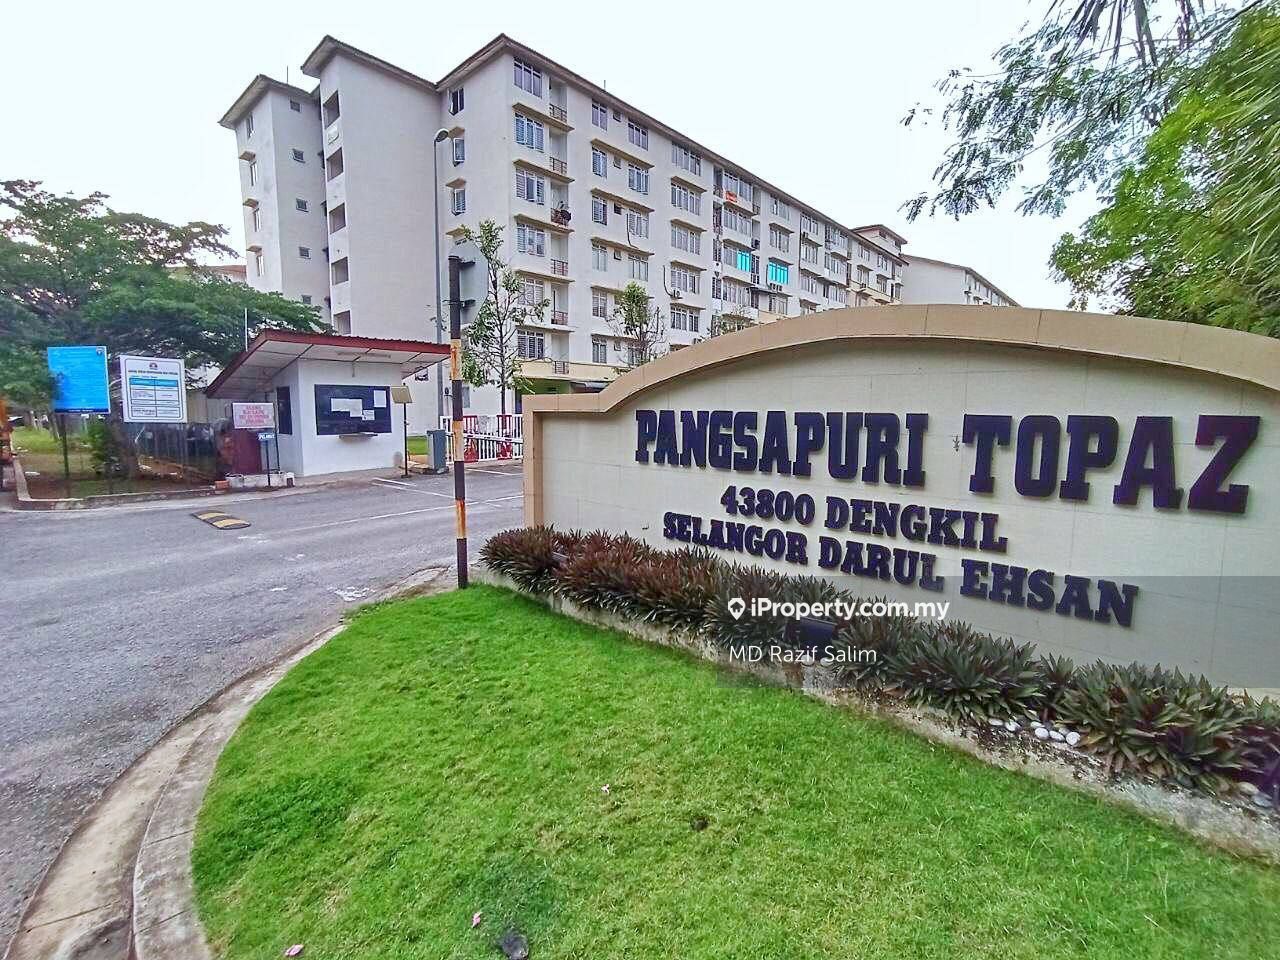 Apartment Taman Topaz, Dengkil